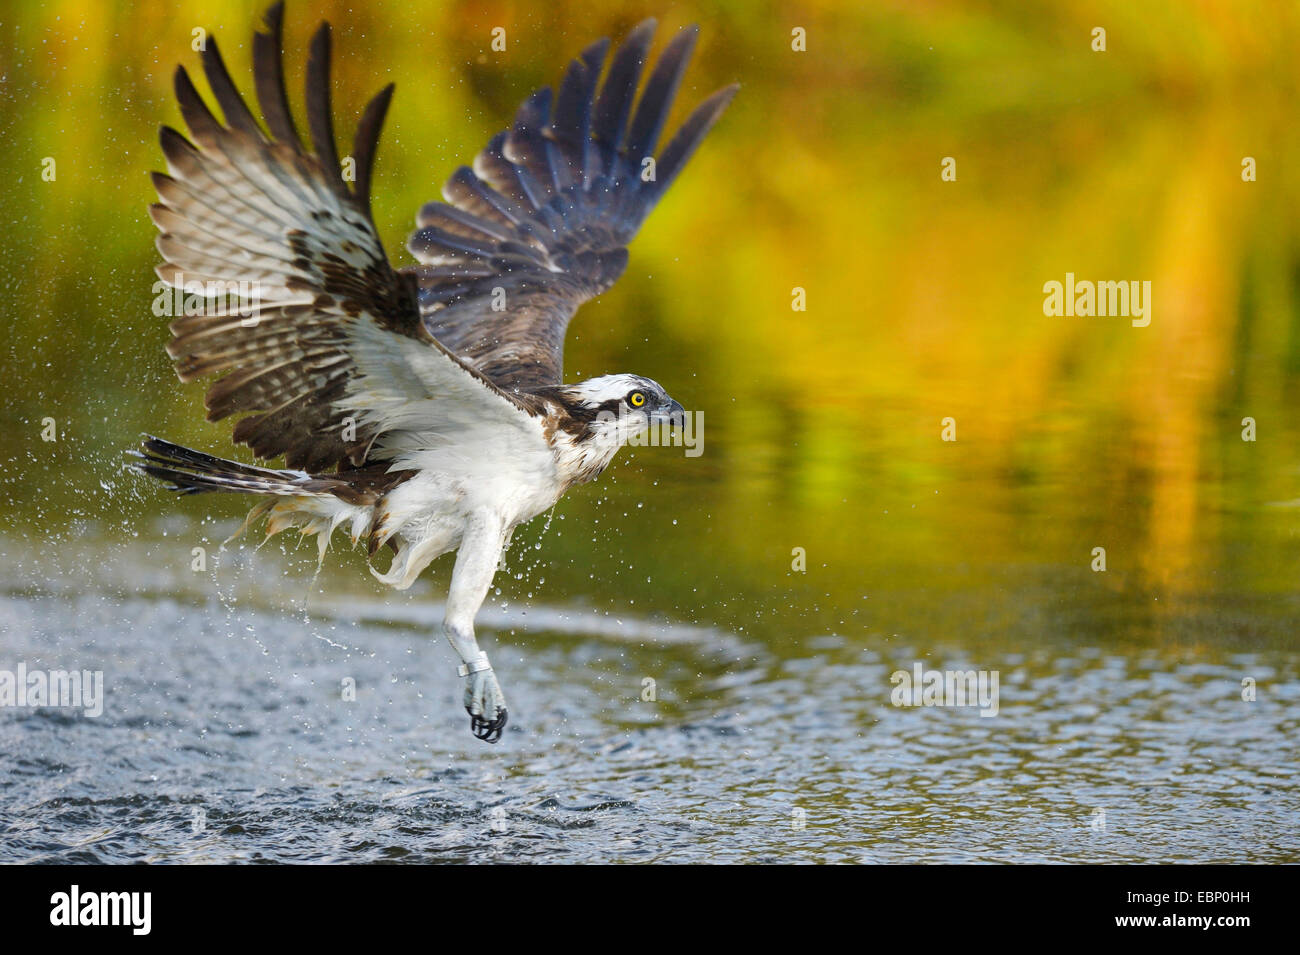 osprey, fish hawk (Pandion haliaetus), flying eagle after